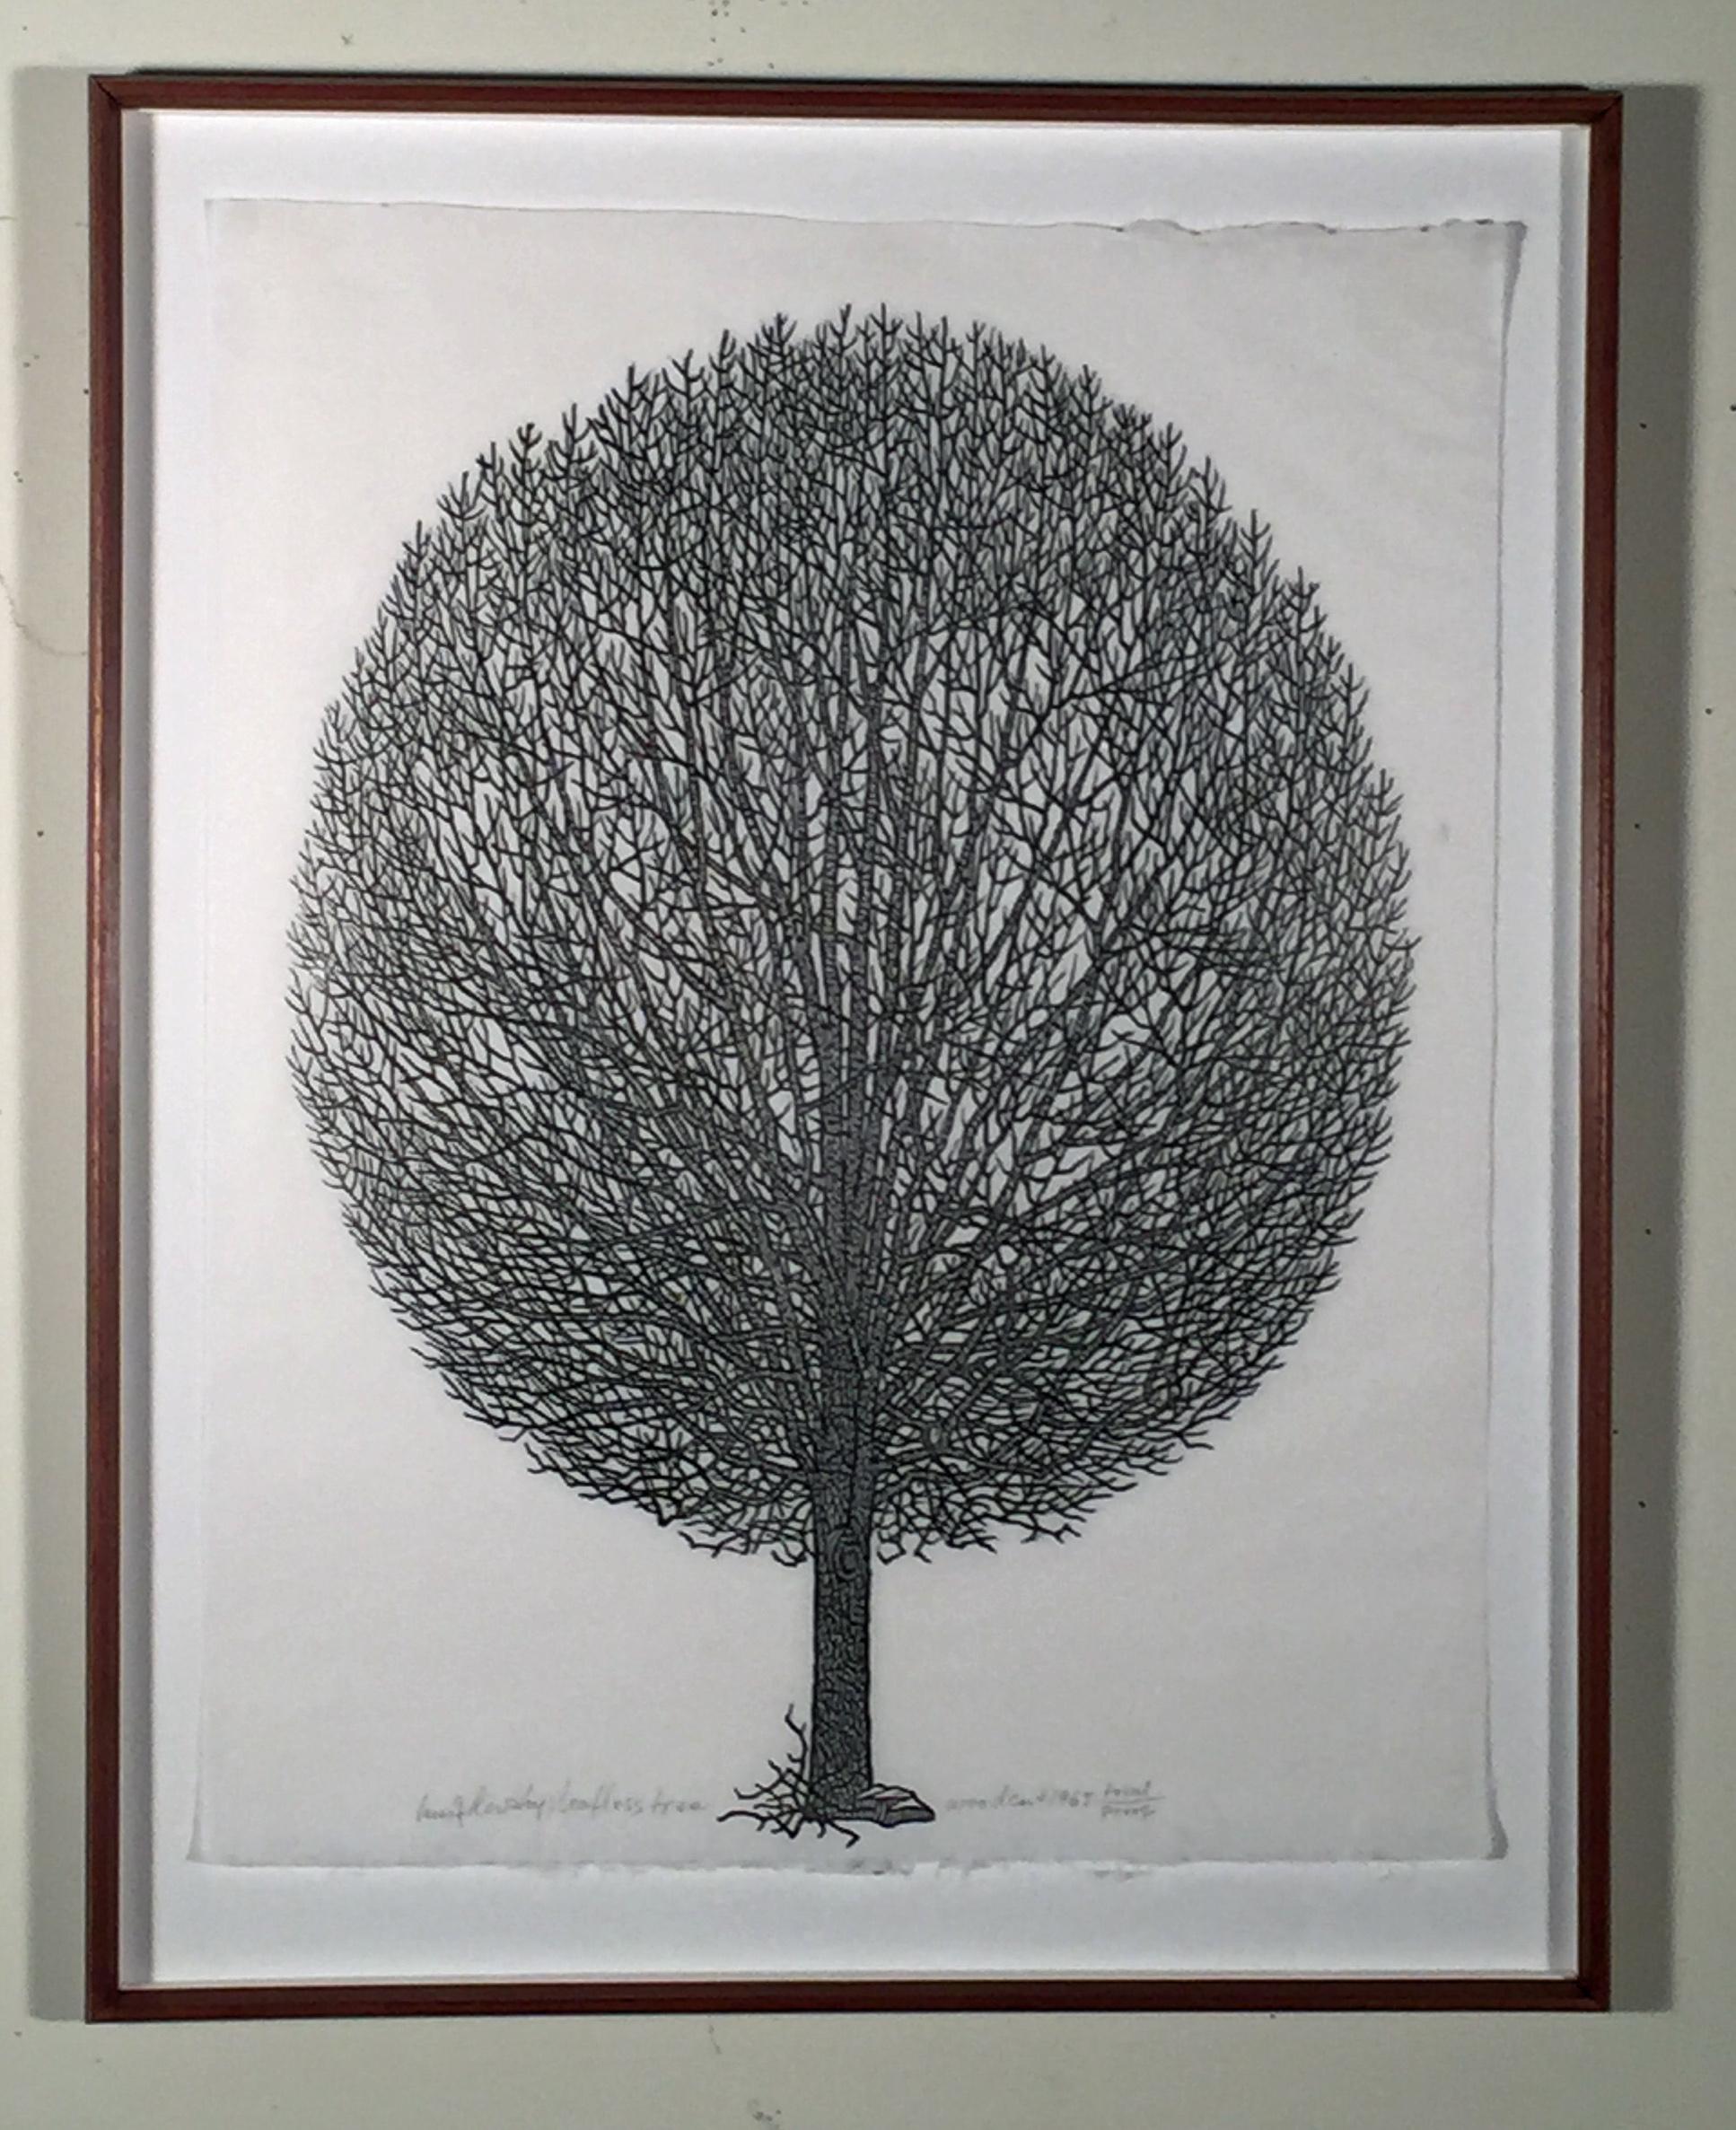 LEAFLESS TREE - Print by Jacques Hnizdovsky